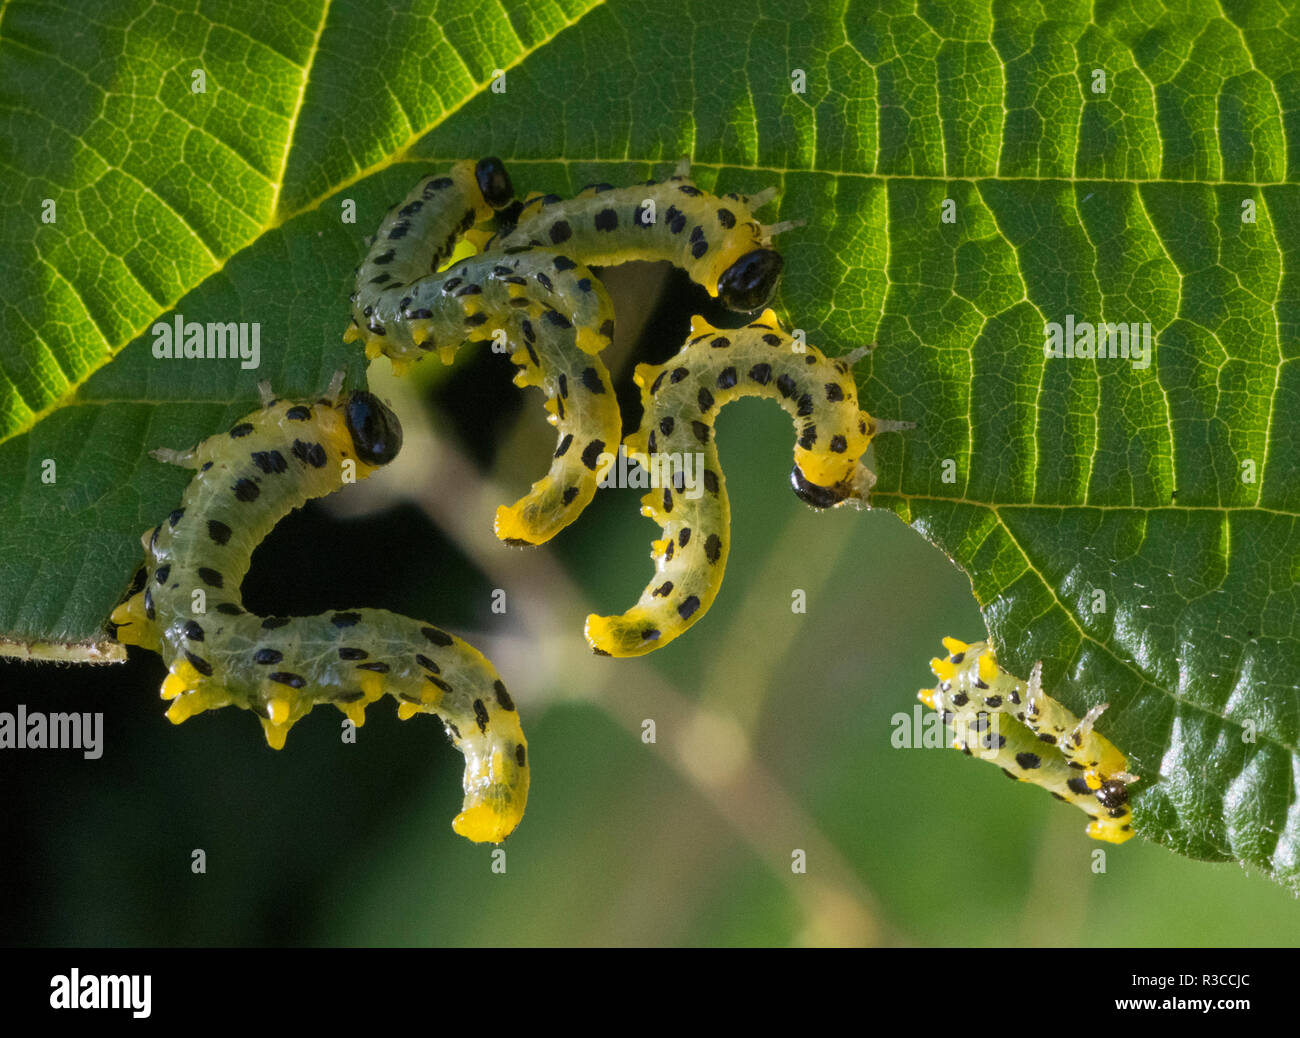 Sawfly caterpillars eating plant leaves, Shropshire, England, UK Stock Photo